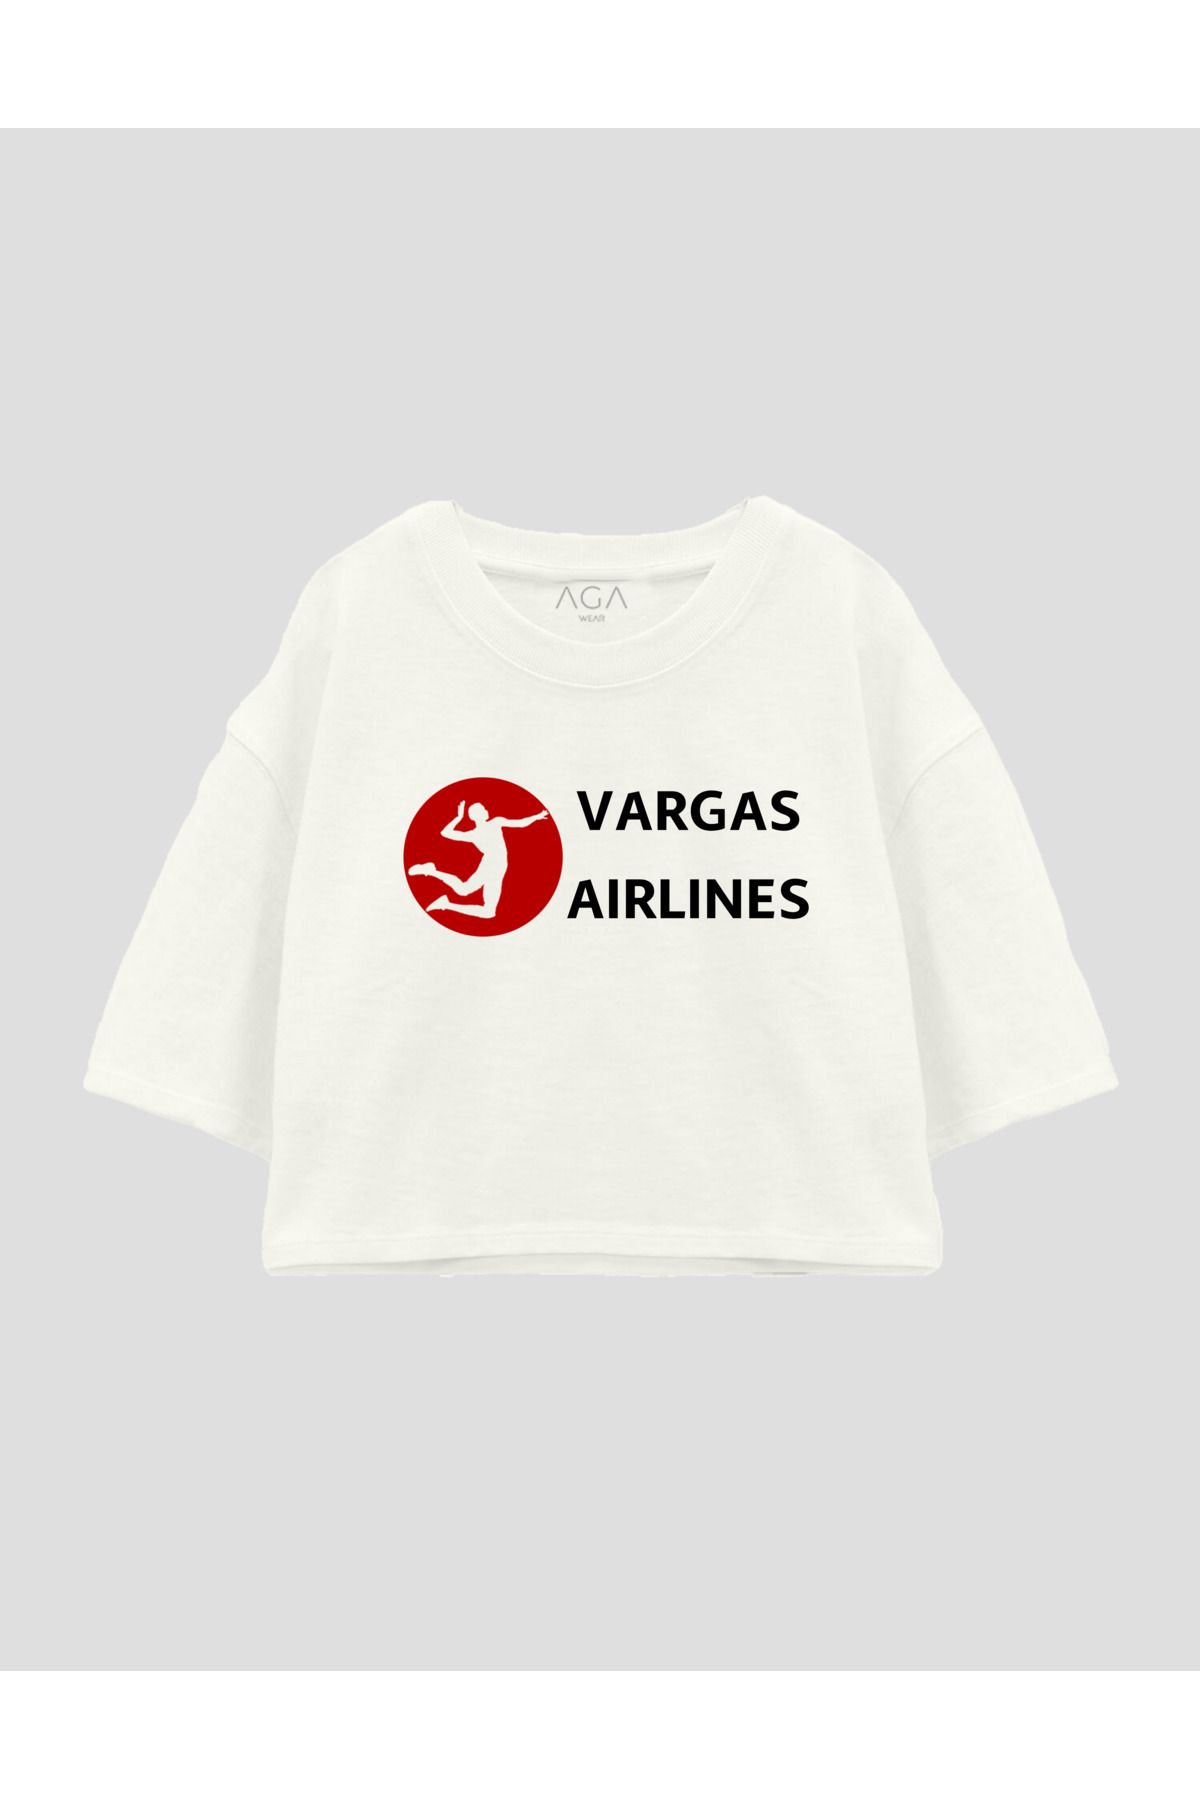 AGA WEAR Vargas Airlines Kadın Oversize Crop